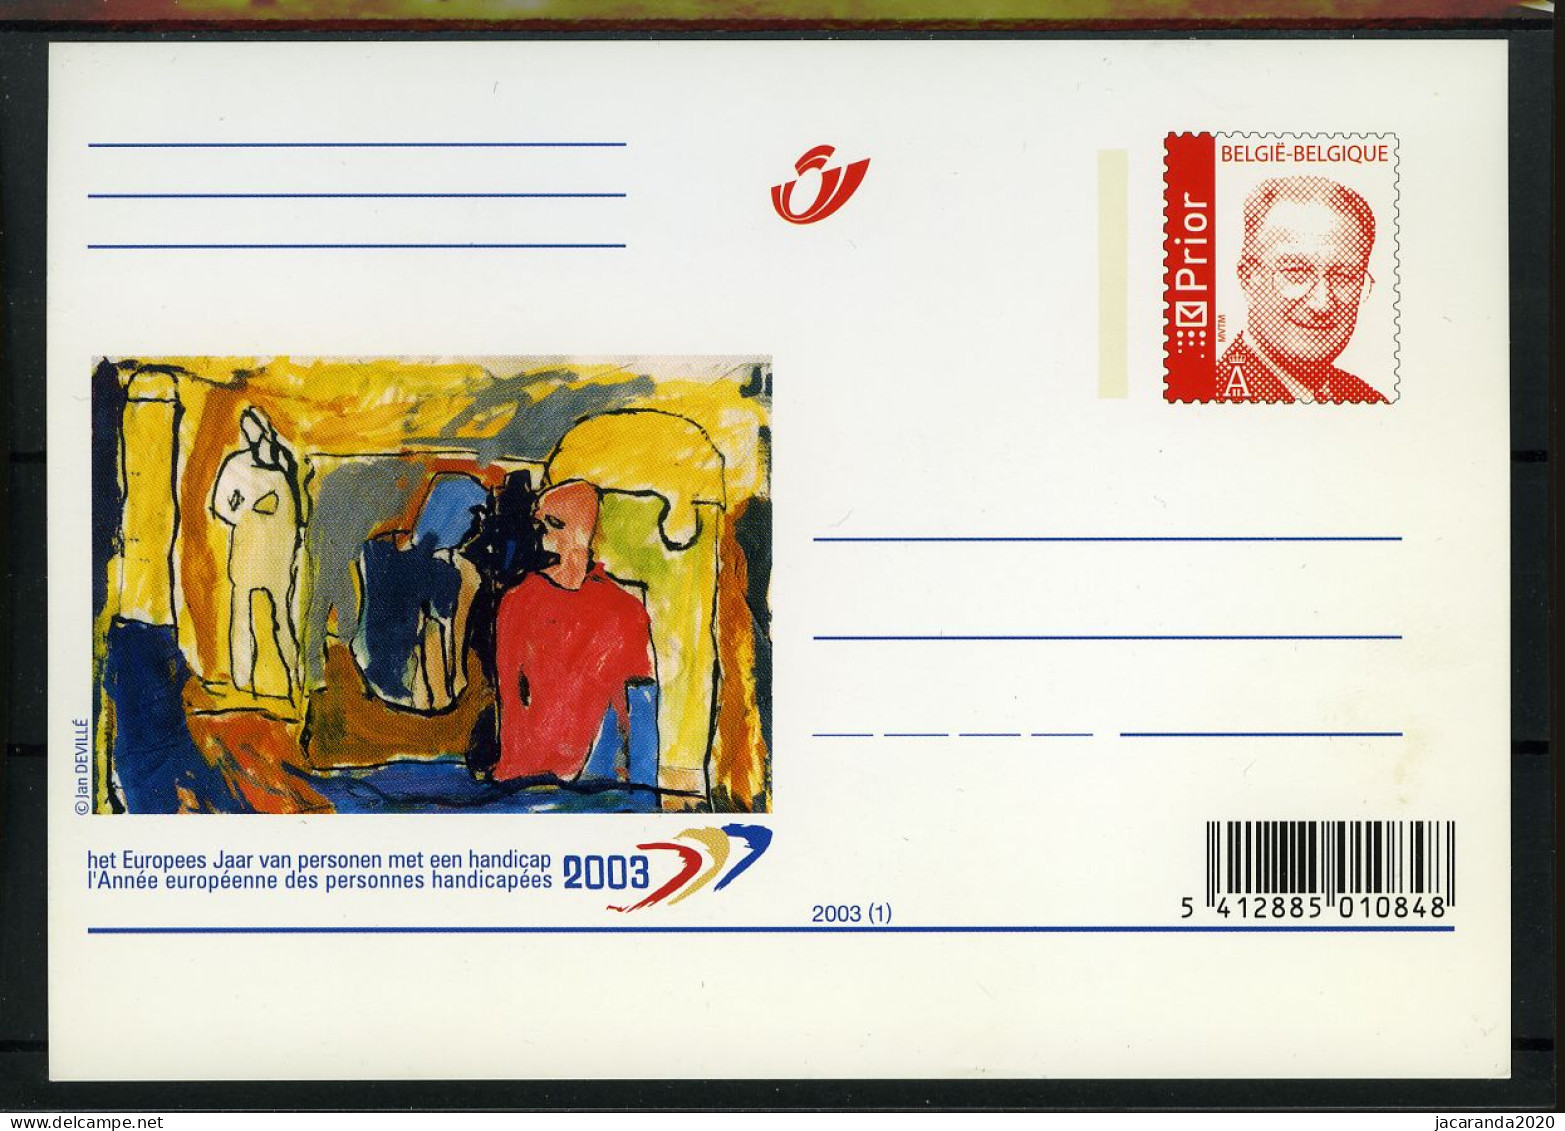 2003 - Europees Jaar Van Personen Met Een Handicap - Année Européenne Des Personnes Handicapées - BK86 - Illustrierte Postkarten (1971-2014) [BK]